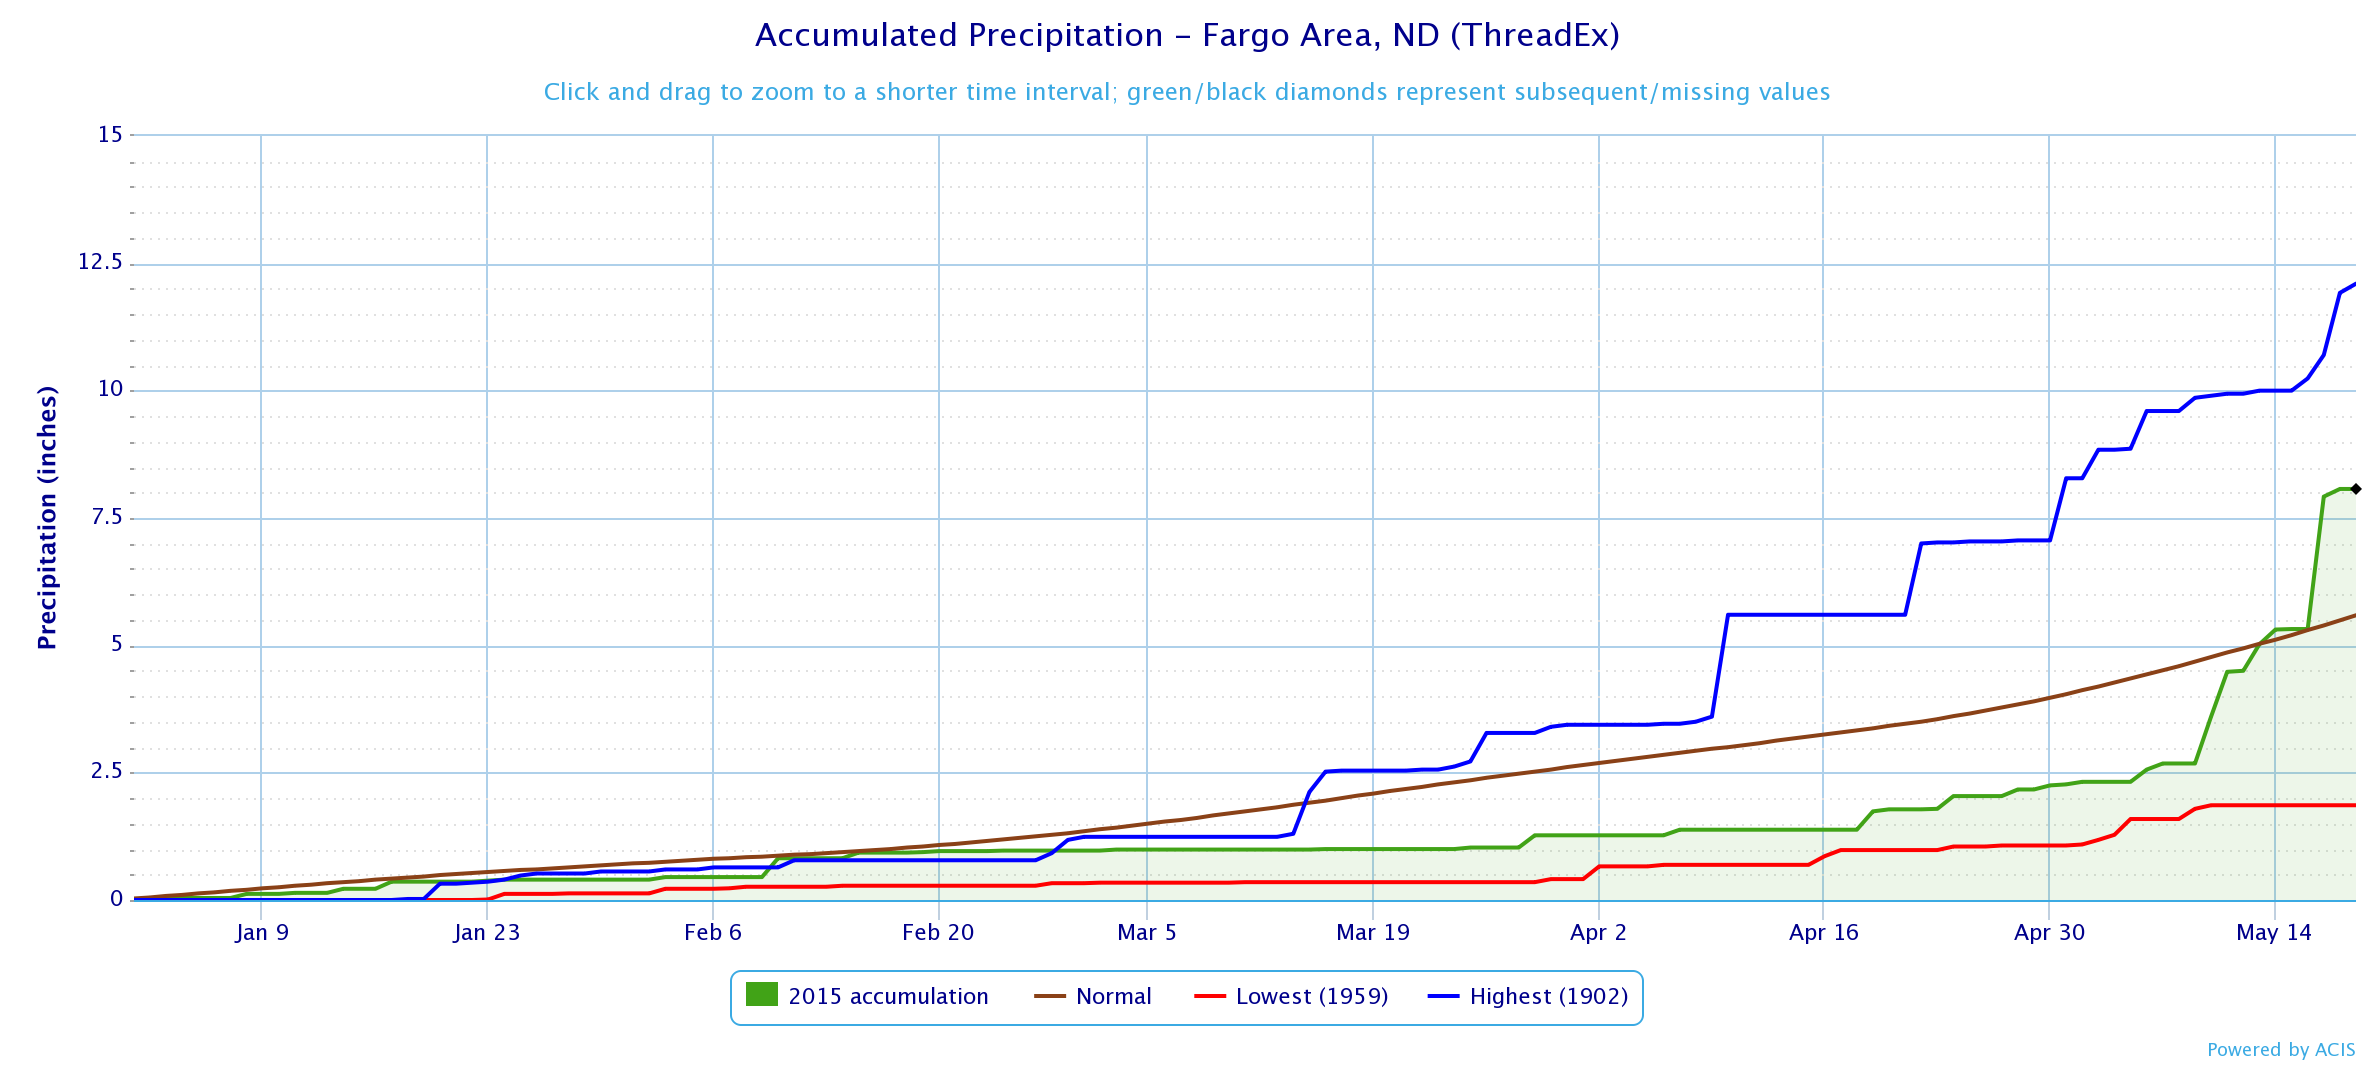 Fargo (KFAR) precipitation from January 1 to May 18, 2015 and records